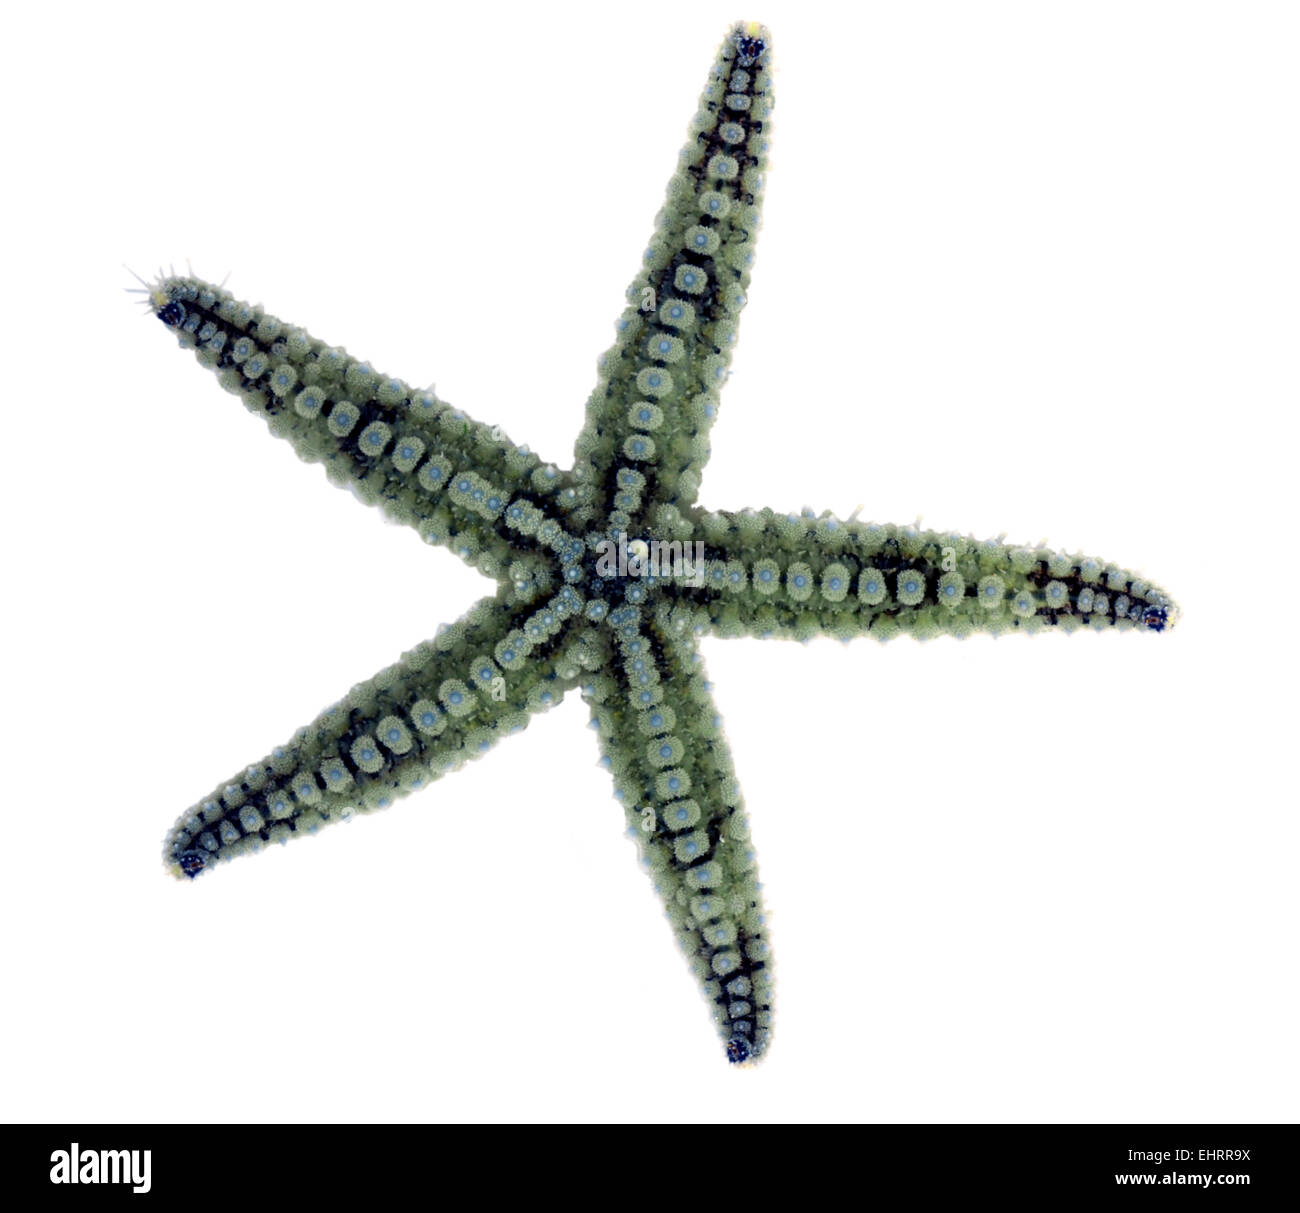 Spiny Starfish - marthasterias glacialis Stock Photo